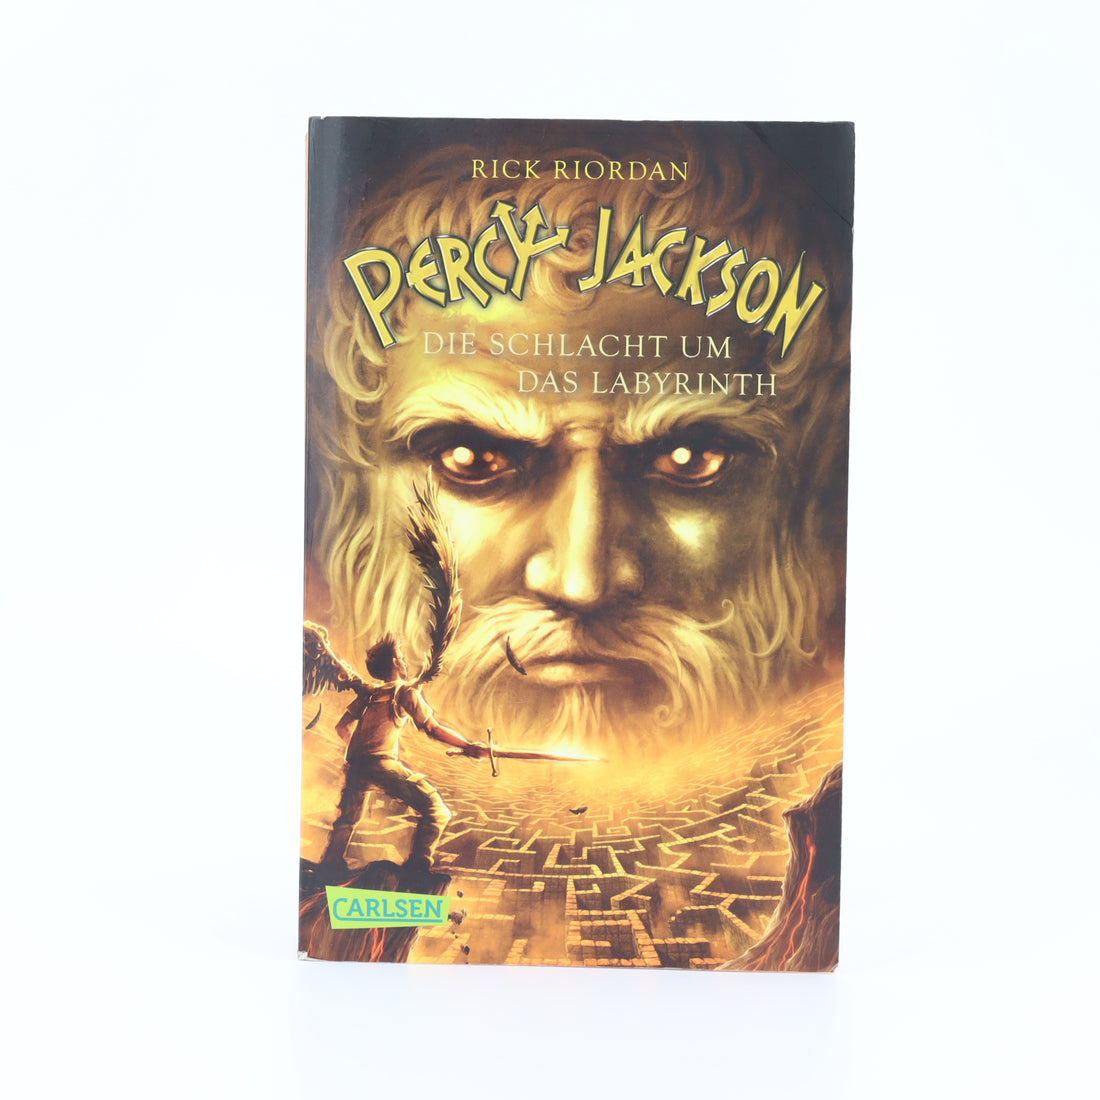 Jugend-Buch - Carlsen -  Percy Jackson - Die Schlacht um das Labyrinth -  - Sehr guter Zustand